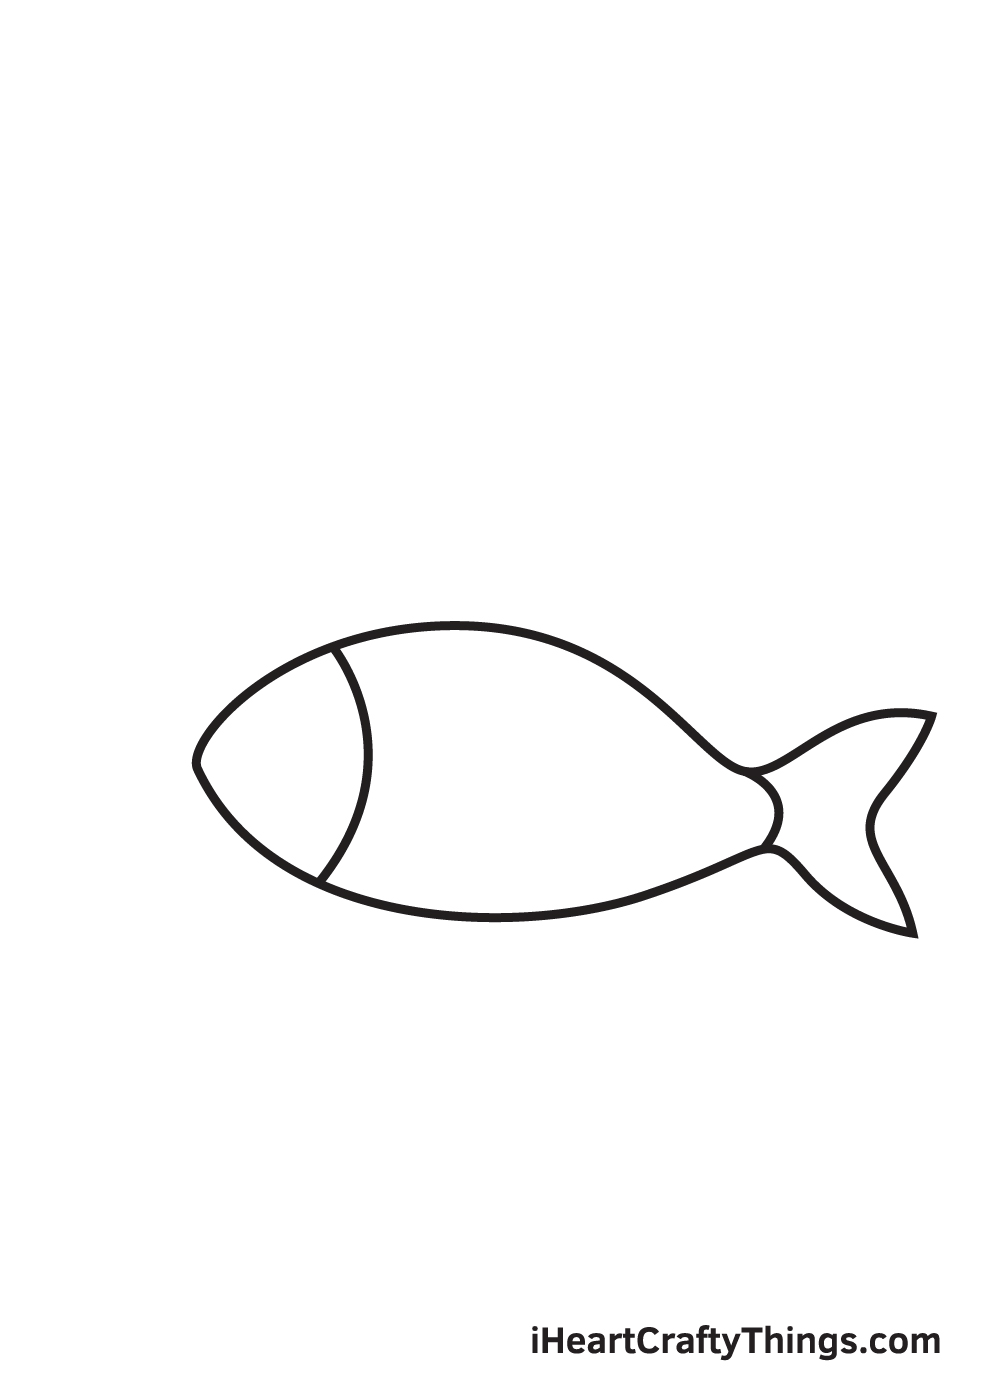 fish drawing - step 3